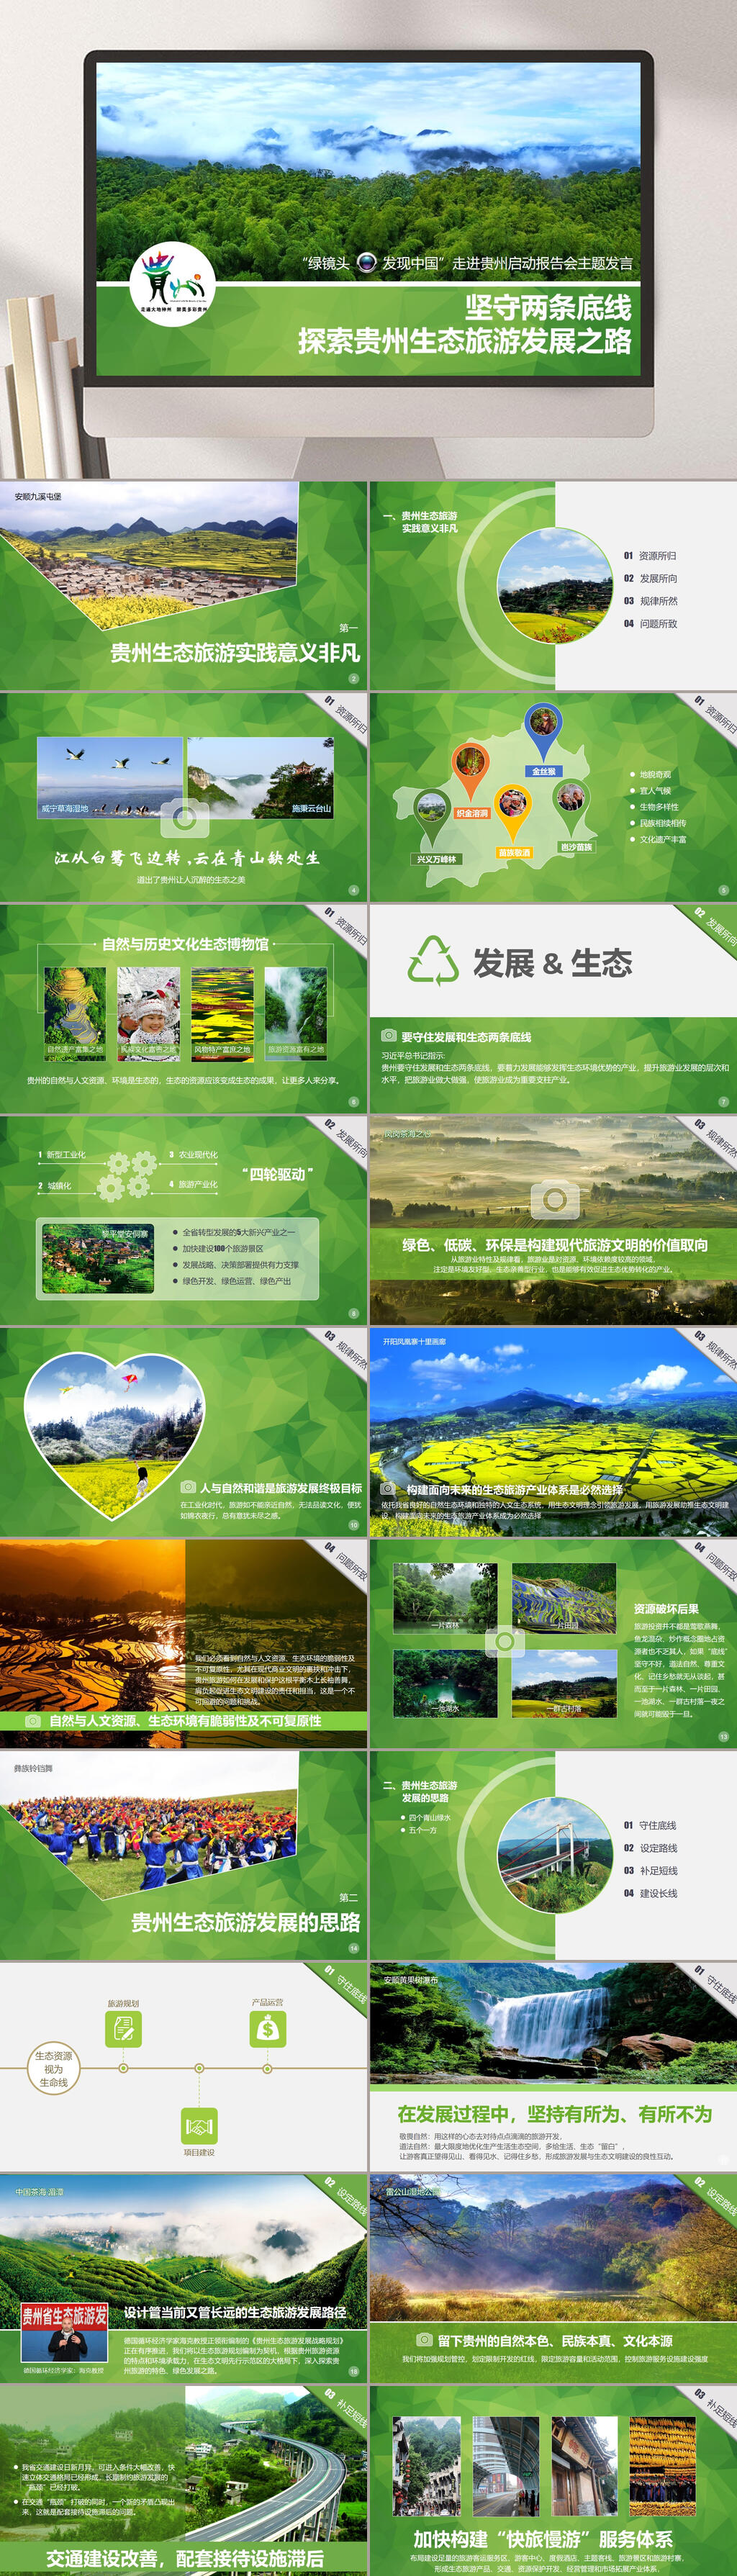 绿色环保贵州生态旅游发展之路宣传ppt